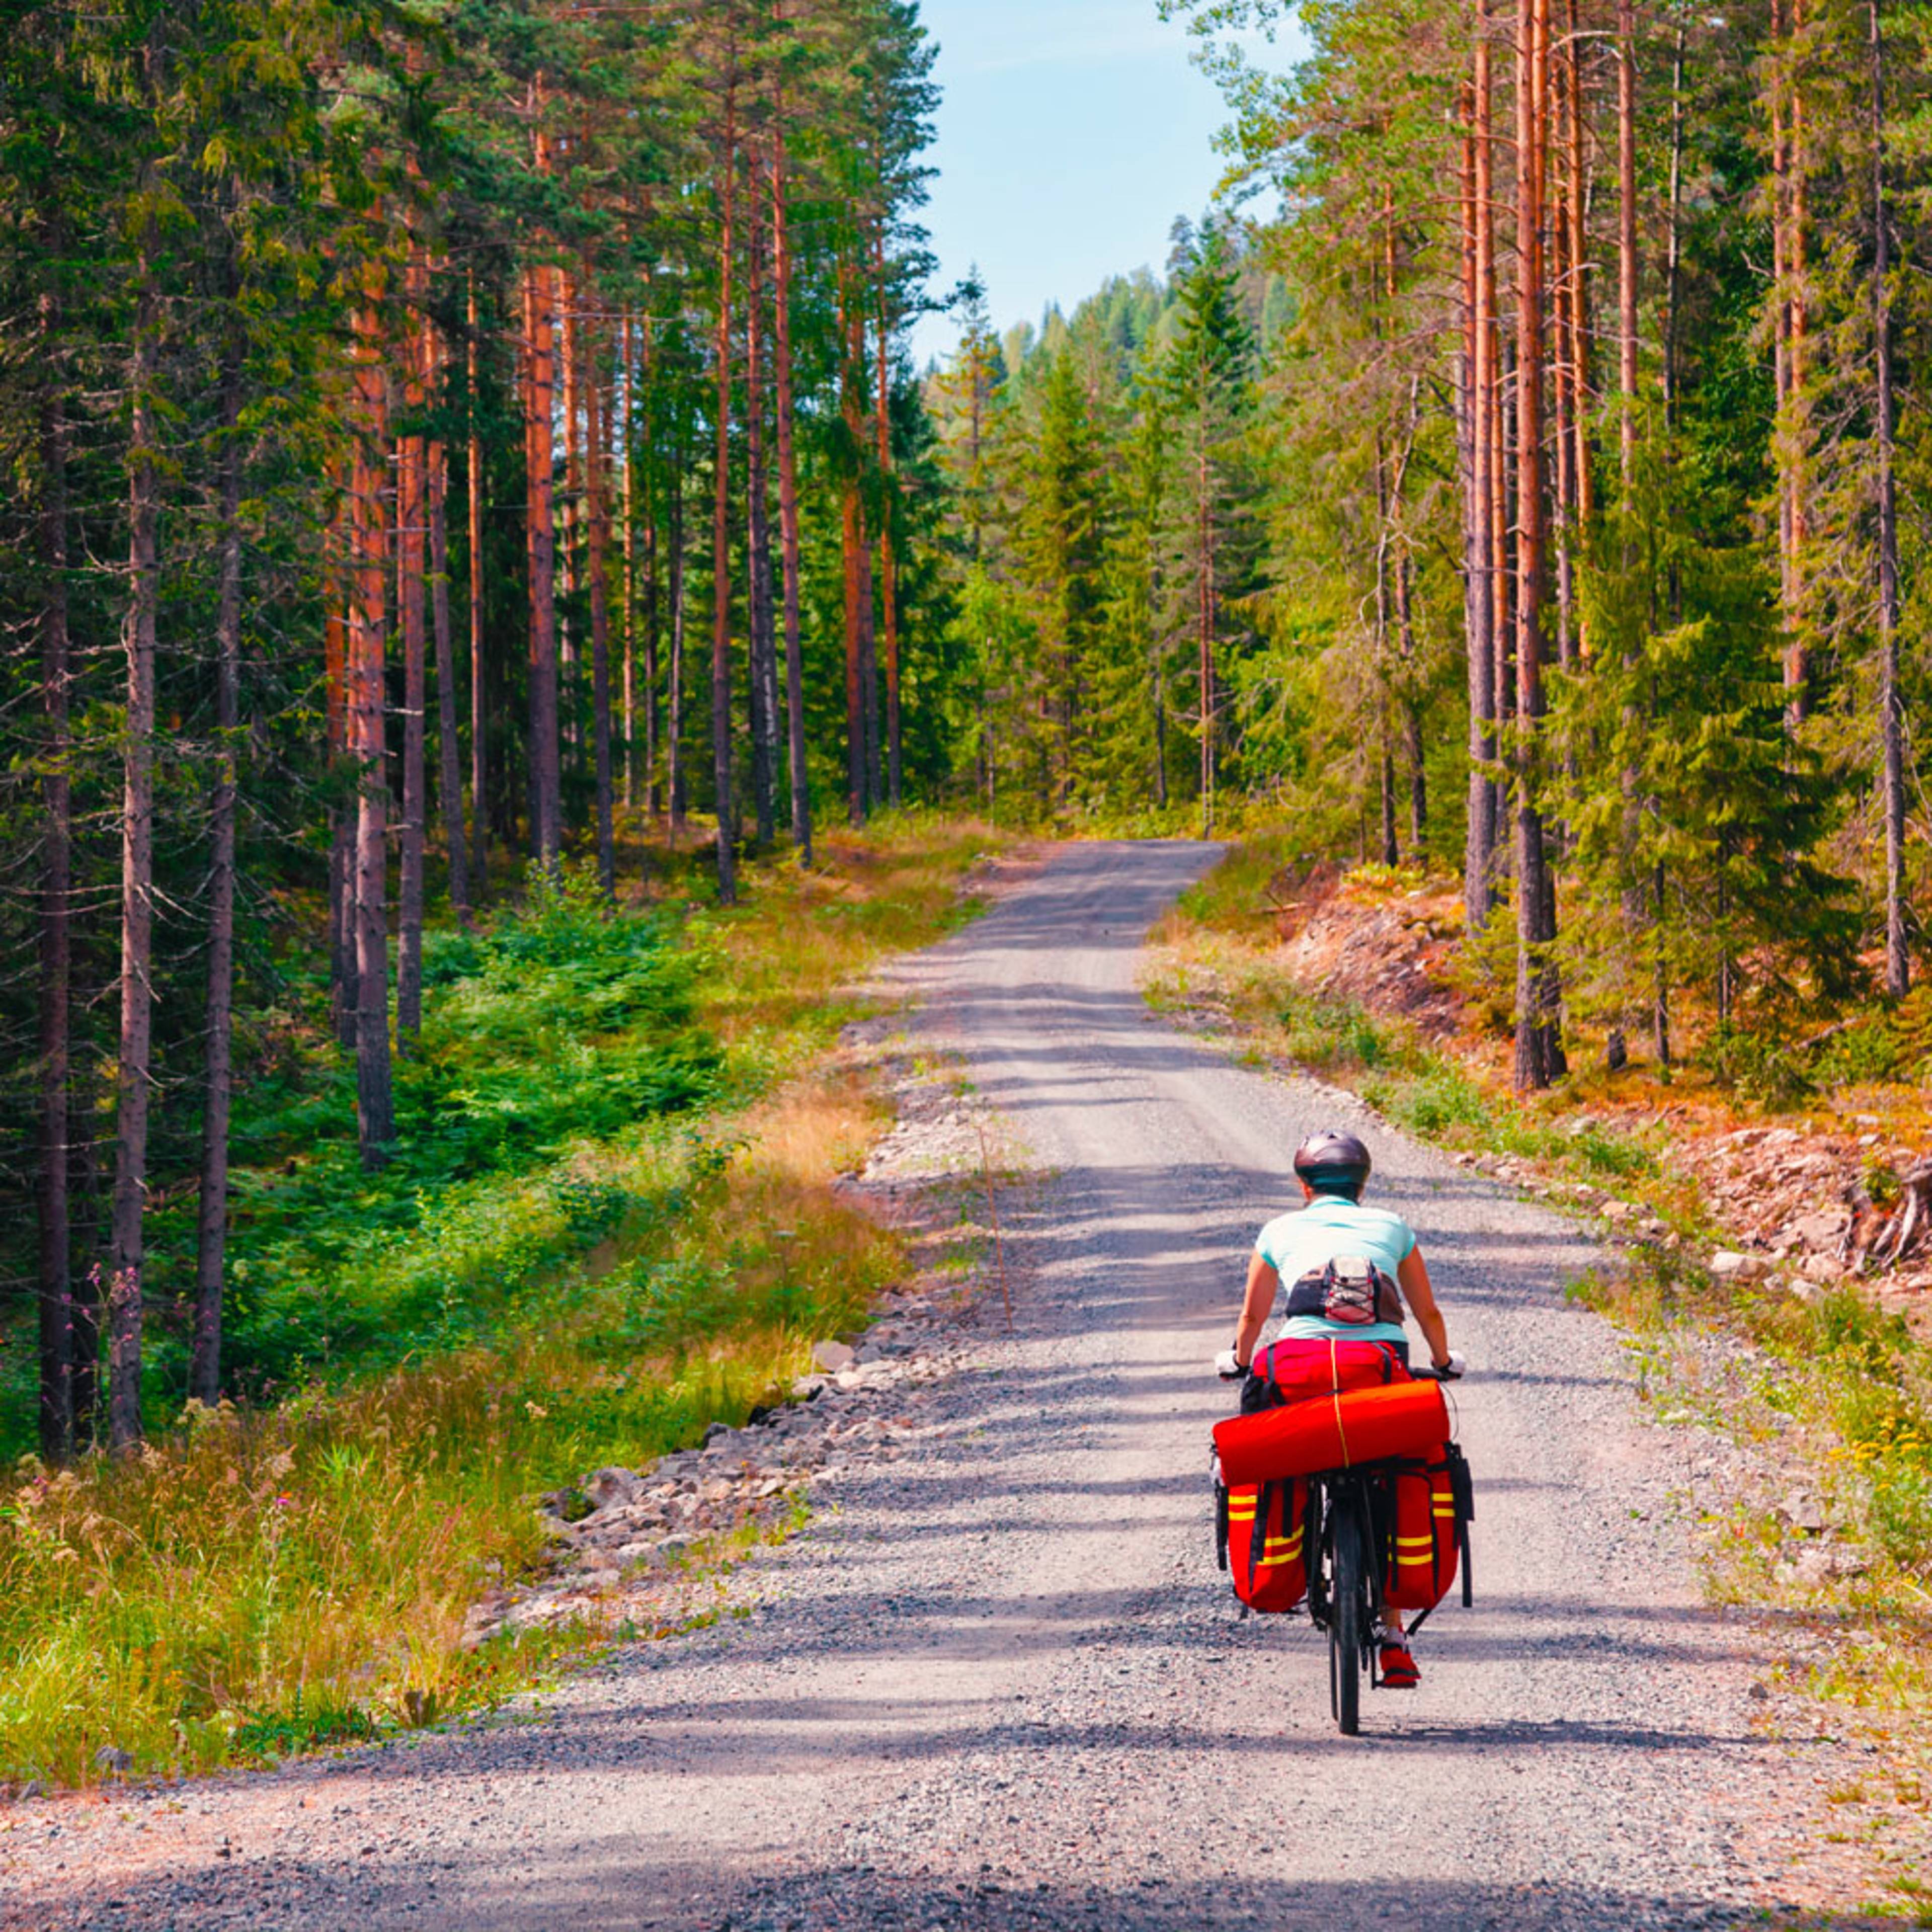 Crea il tuo viaggio in bici in Norvegia